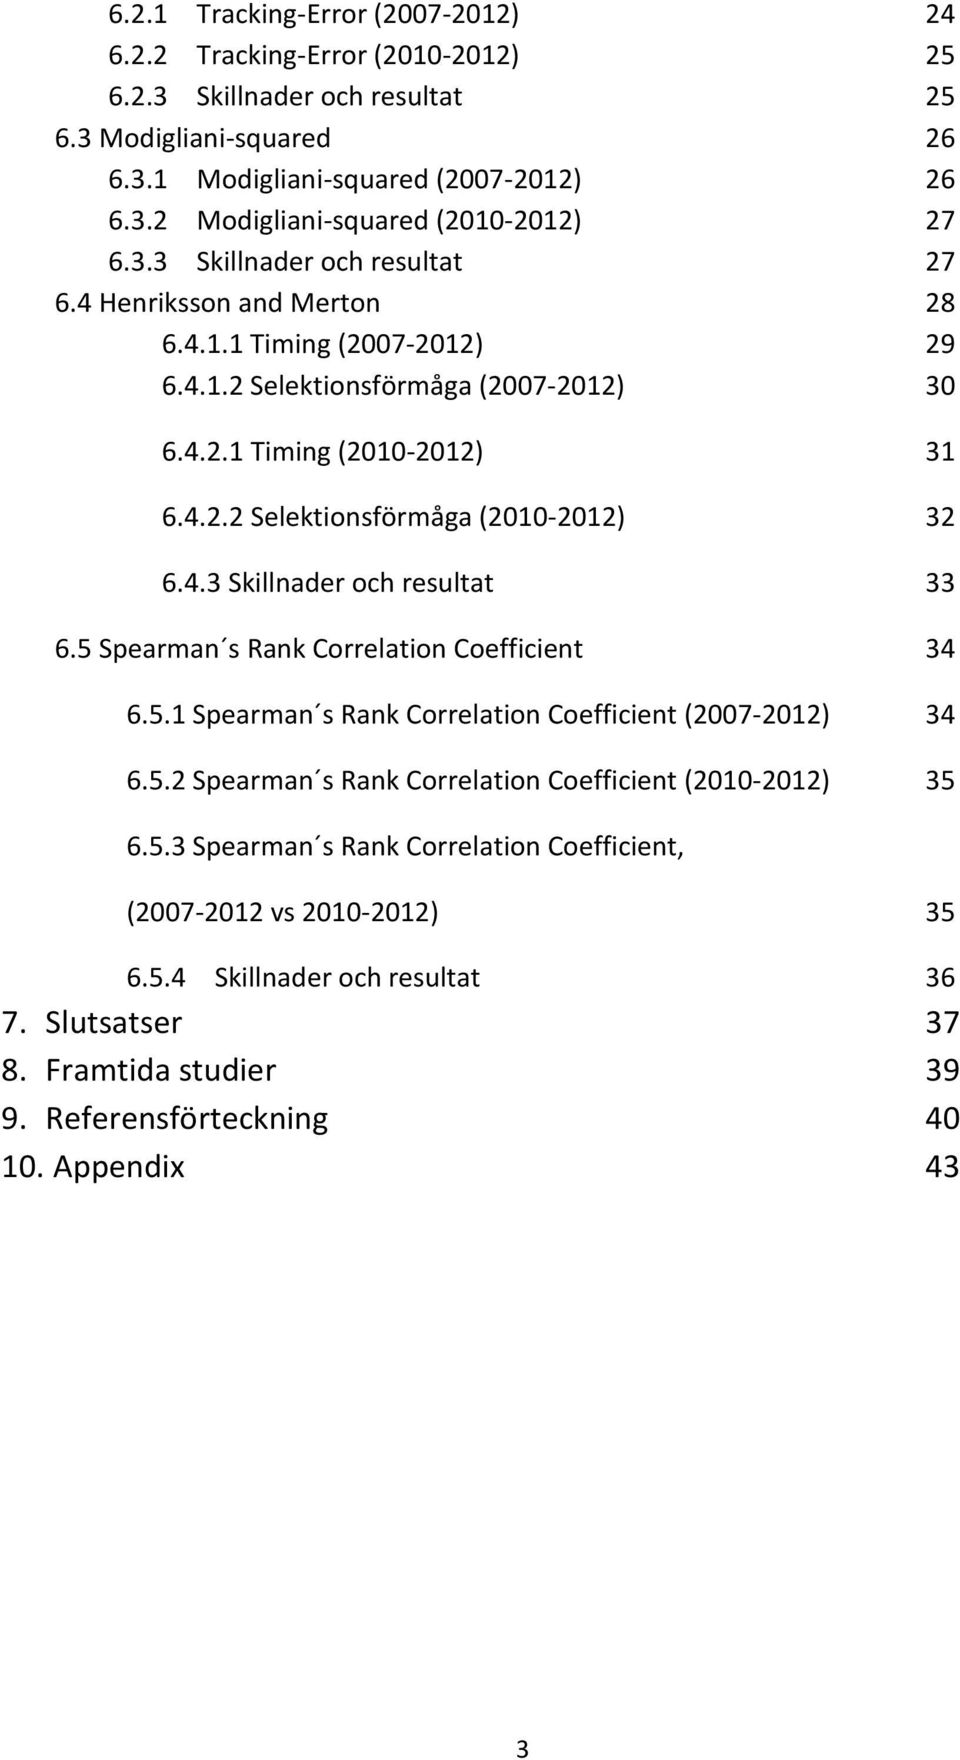 4.3 Skillnader och resultat 33 6.5 Spearman s Rank Correlation Coefficient 34 6.5.1 Spearman s Rank Correlation Coefficient (2007-2012) 34 6.5.2 Spearman s Rank Correlation Coefficient (2010-2012) 35 6.